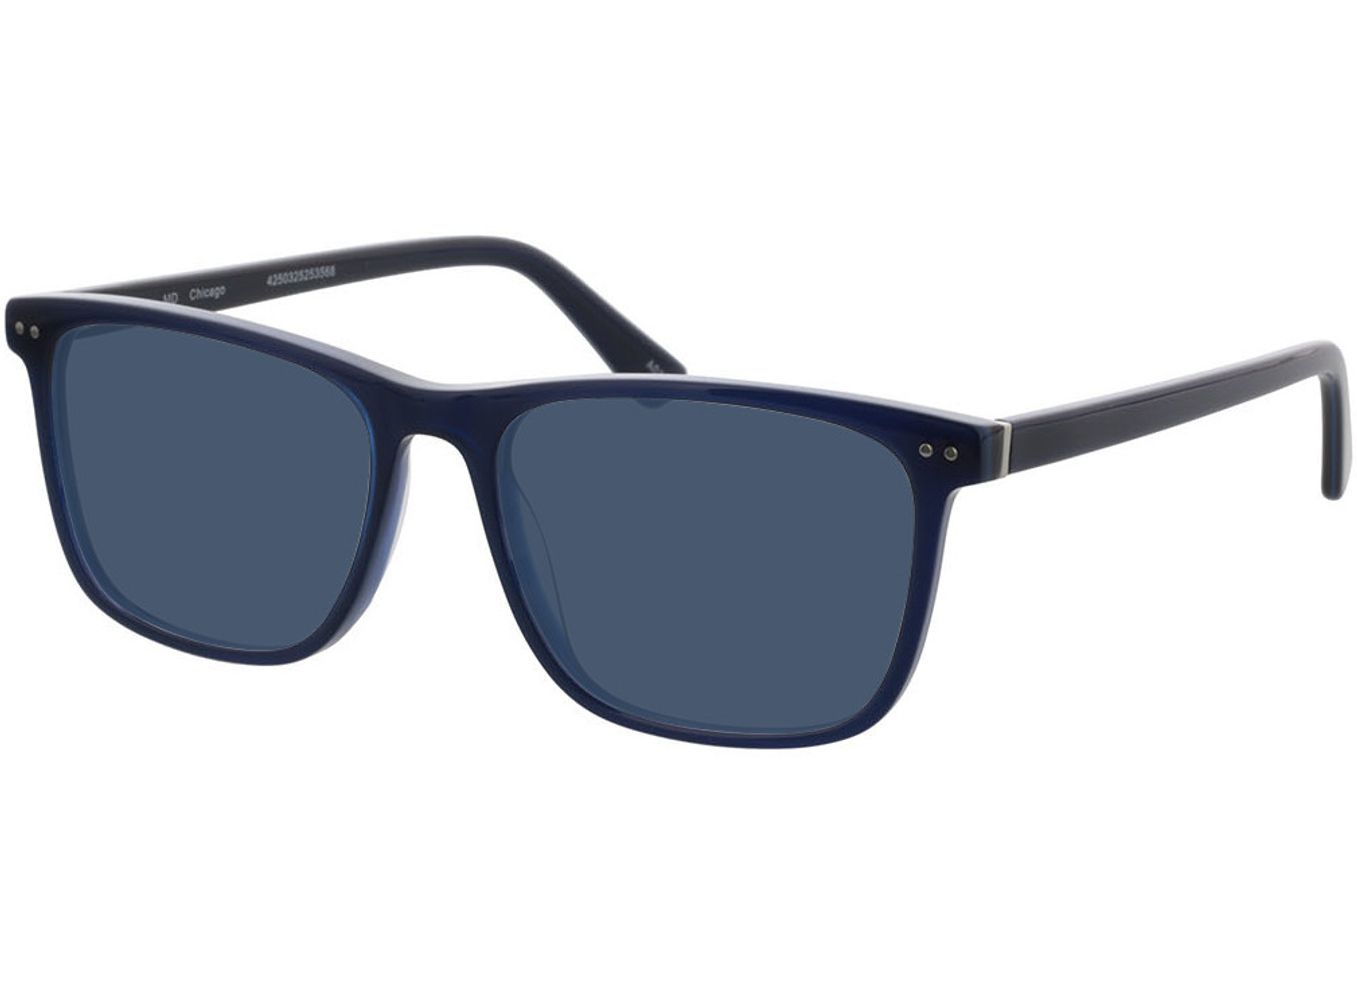 Chicago - blau Sonnenbrille ohne Sehstärke, Vollrand, Eckig von Brille24 Collection